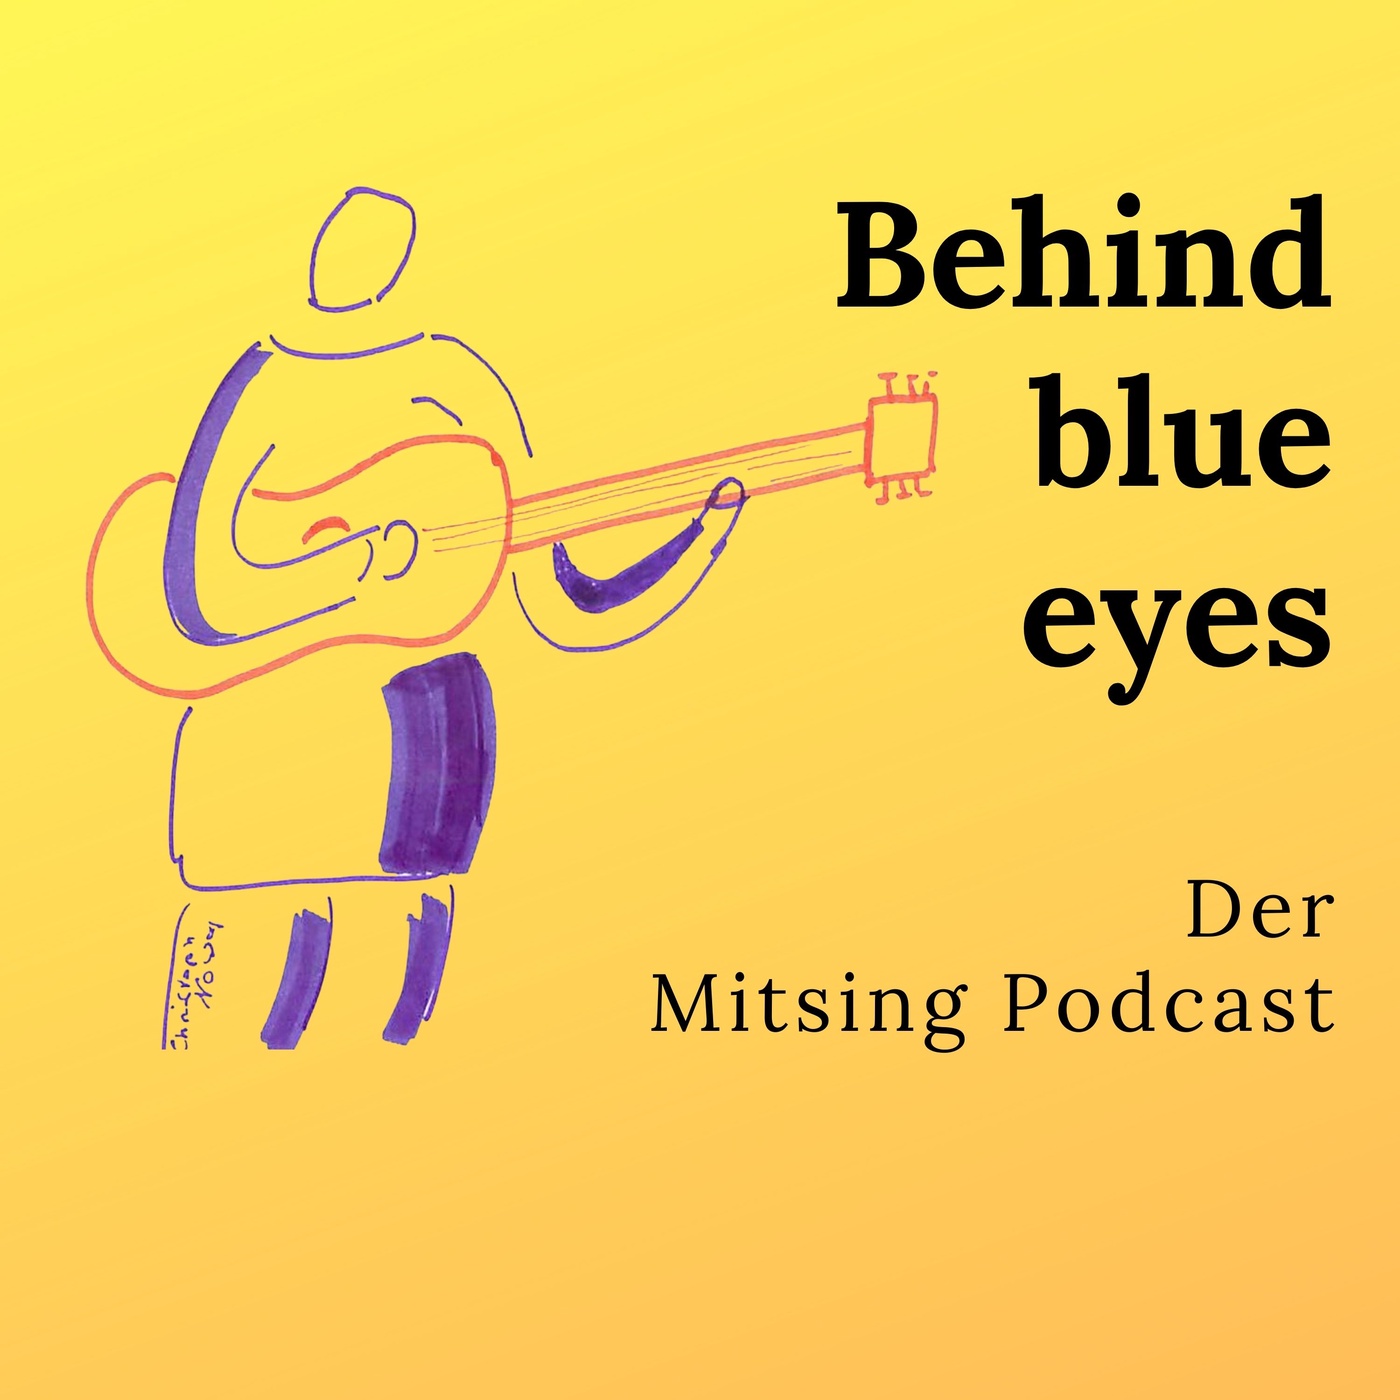 Behind blue eyes von Limp Bizkit. Org. The Who